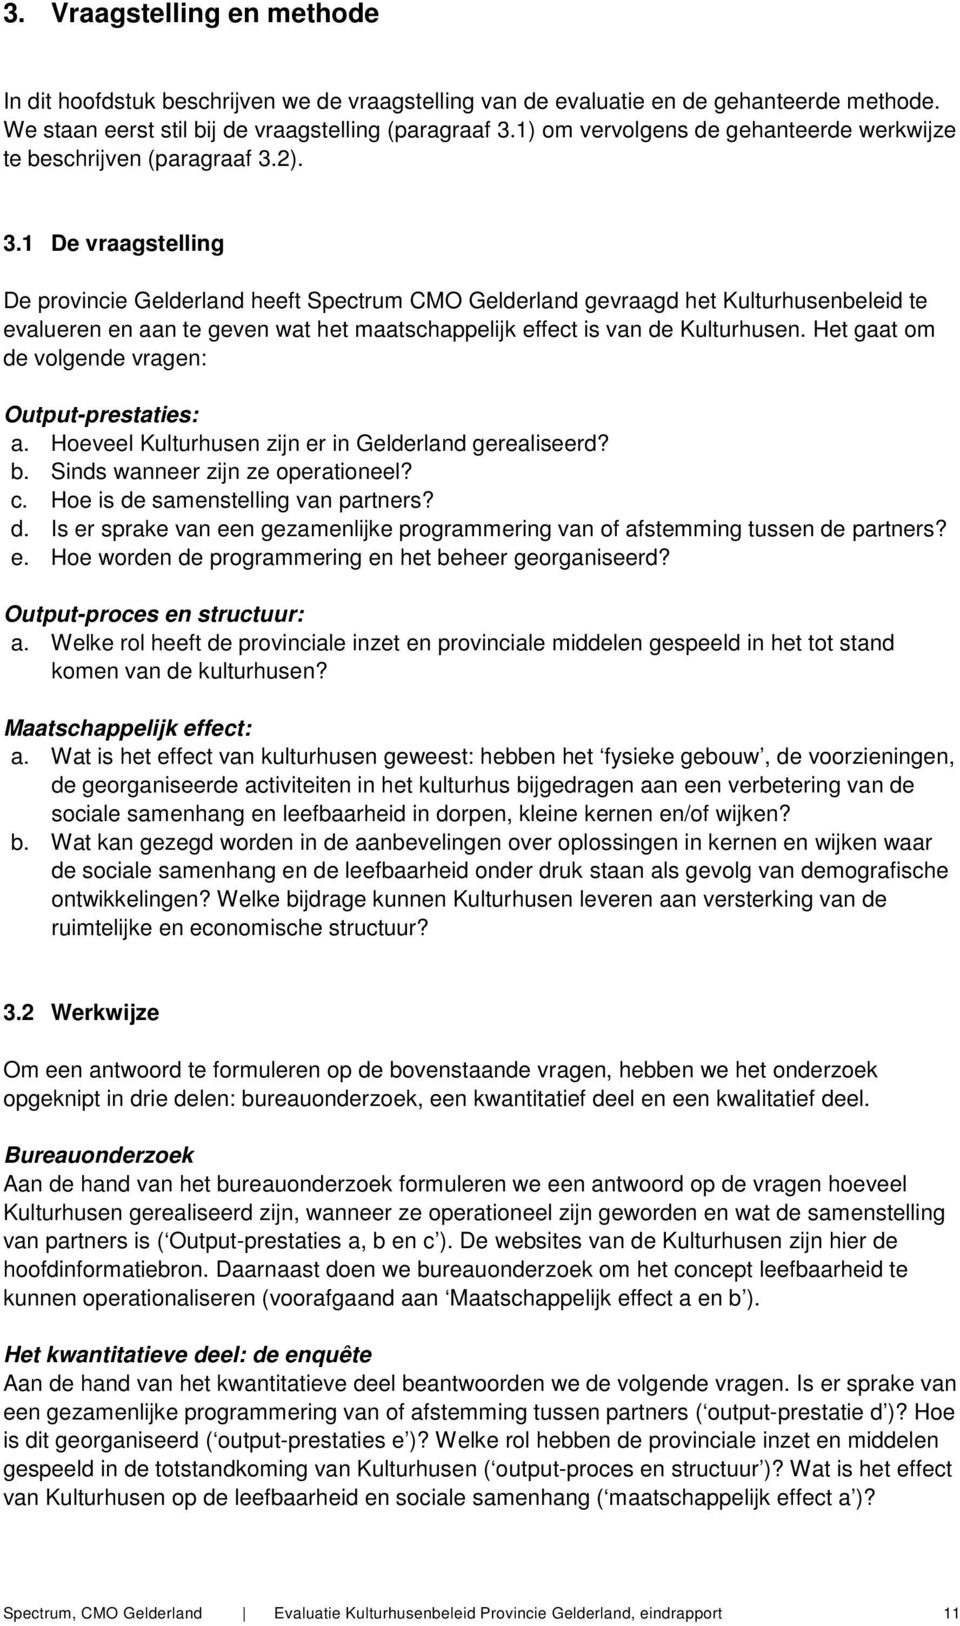 2). 3.1 De vraagstelling De prvincie Gelderland heeft Spectrum CMO Gelderland gevraagd het Kulturhusenbeleid te evalueren en aan te geven wat het maatschappelijk effect is van de Kulturhusen.